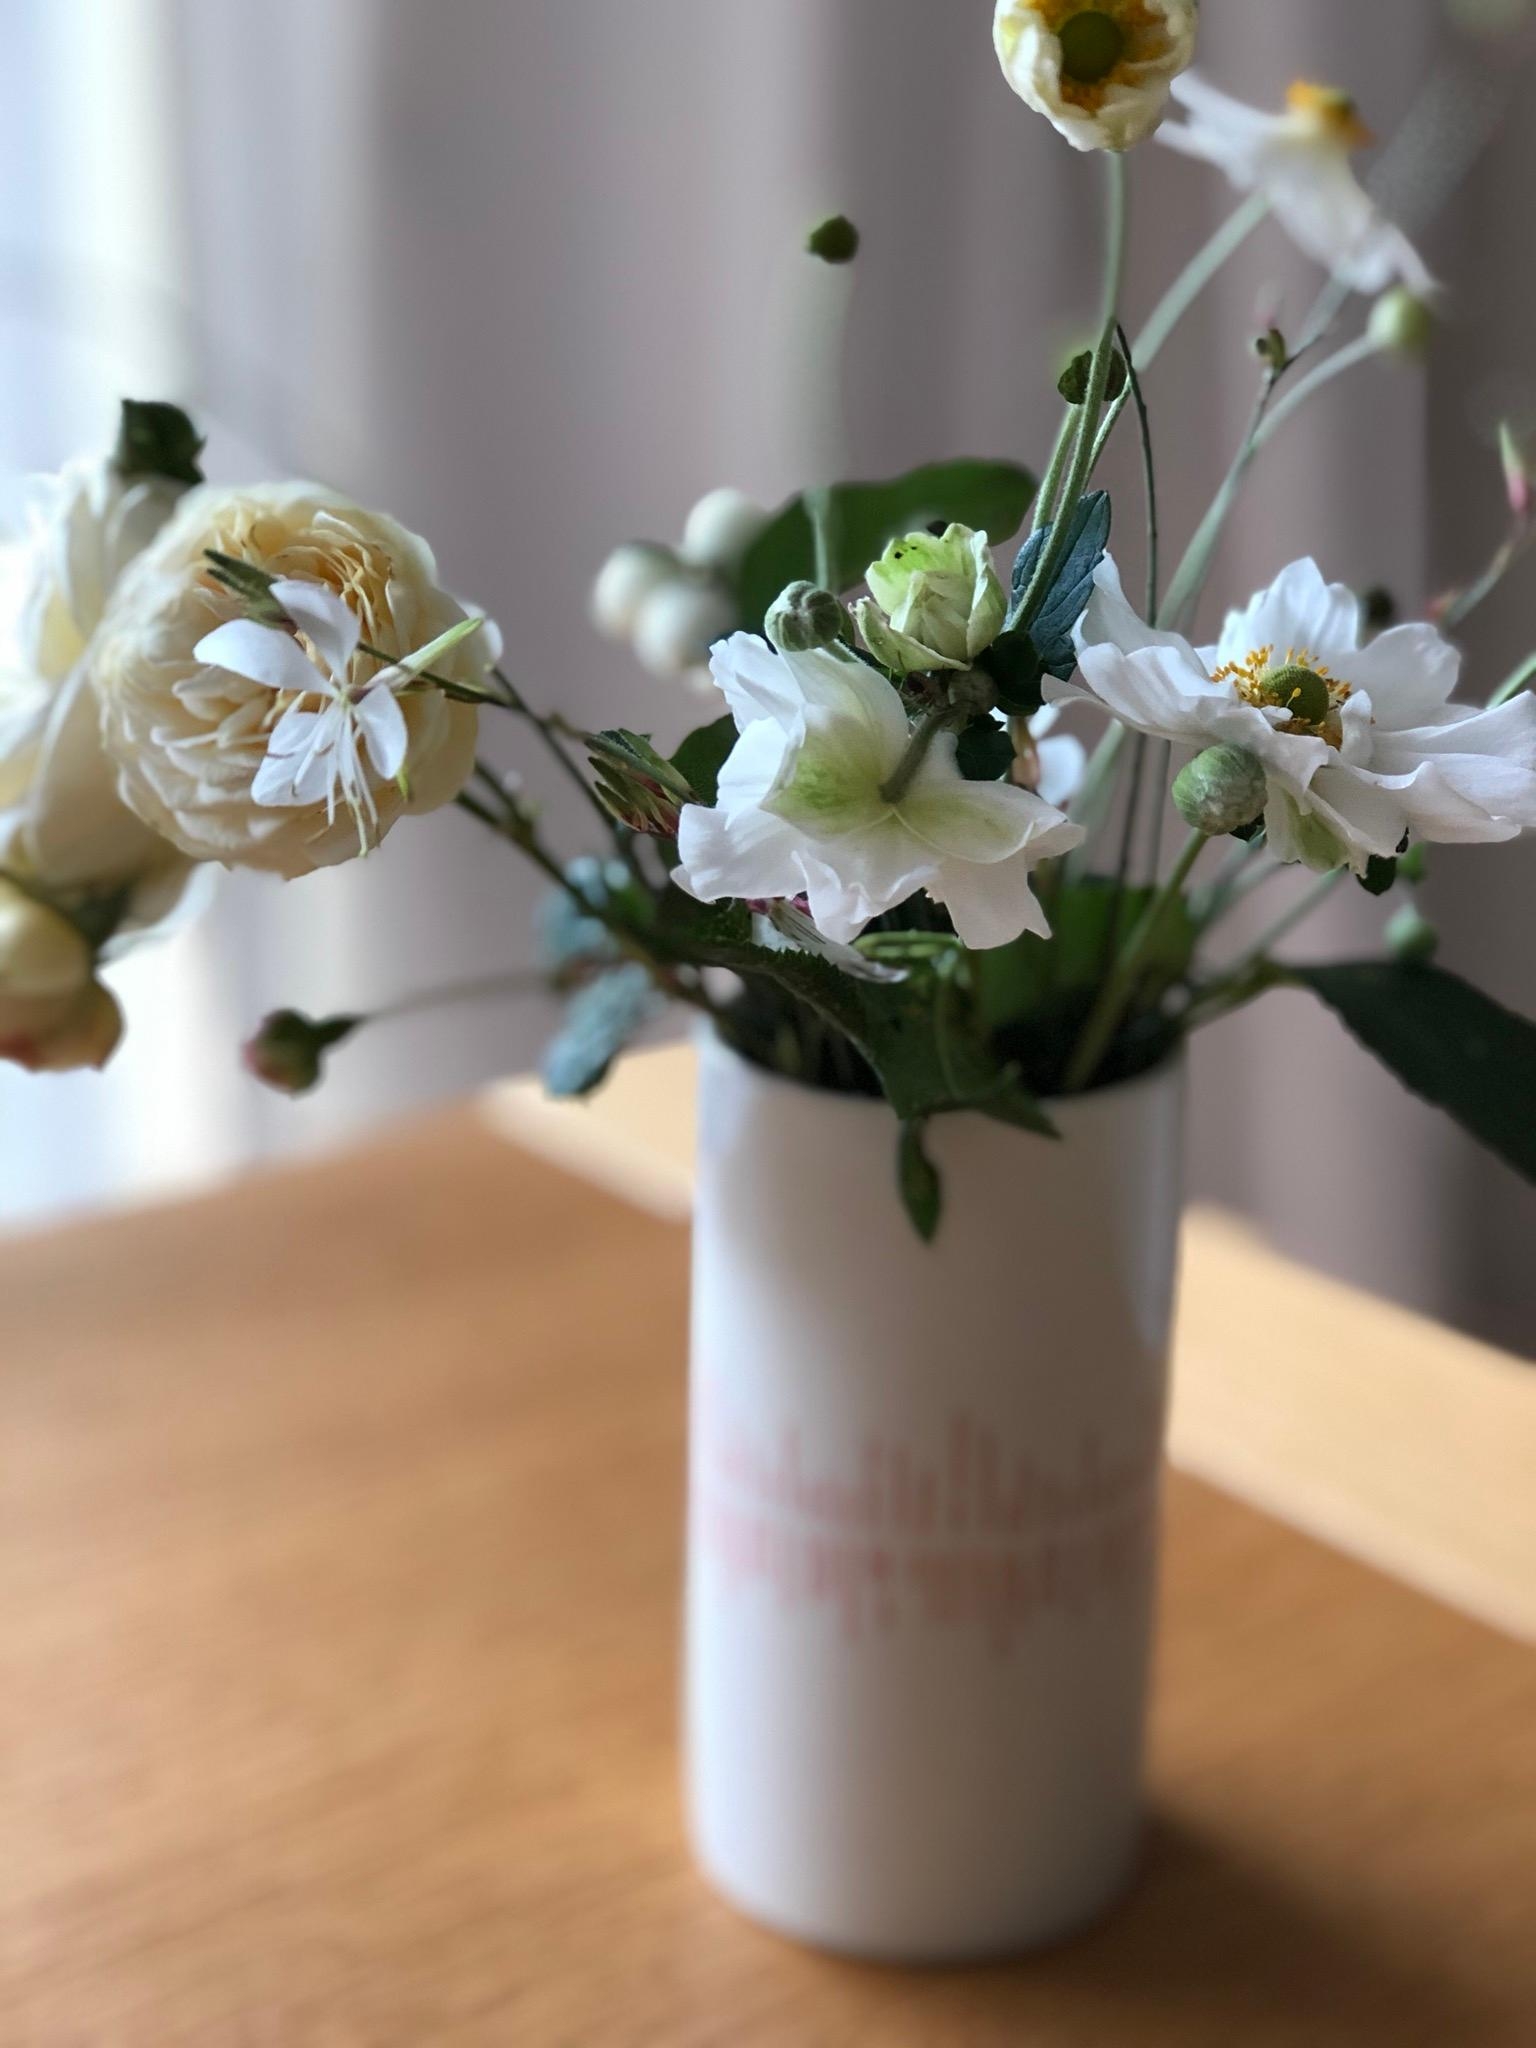 Spätzünder. 🌺🌸🌼
#flowers #flowerlove #blumen #vase #gartenblumen